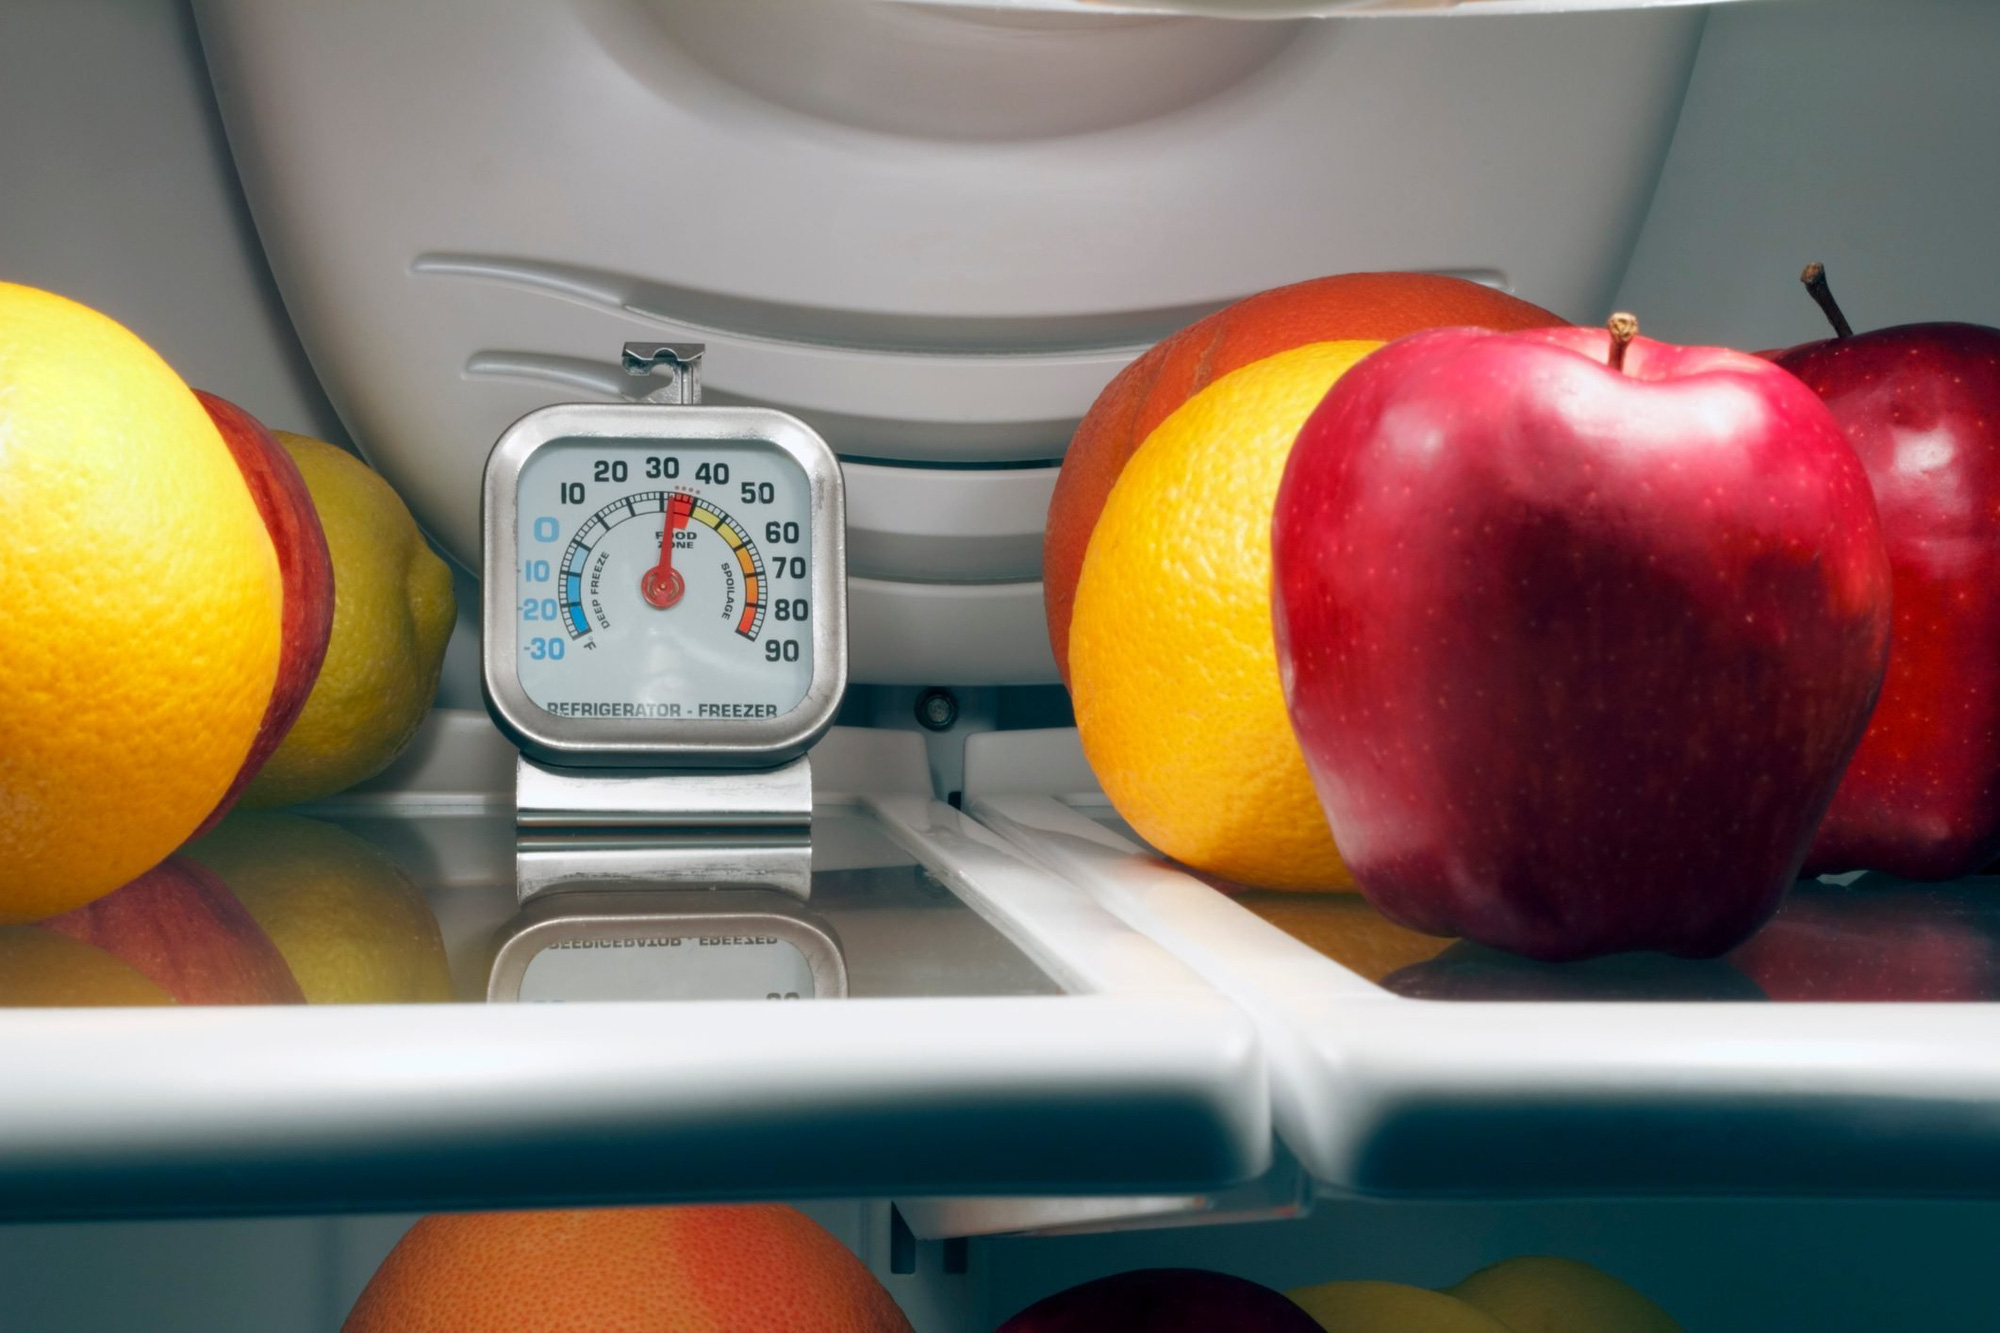 Nên để nhiệt độ bao nhiêu khi bảo quản thực phẩm bằng tủ lạnh? Hướng dẫn của chuyên gia giúp giữ cho thức ăn tươi ngon lâu hơn và an toàn - Ảnh 2.